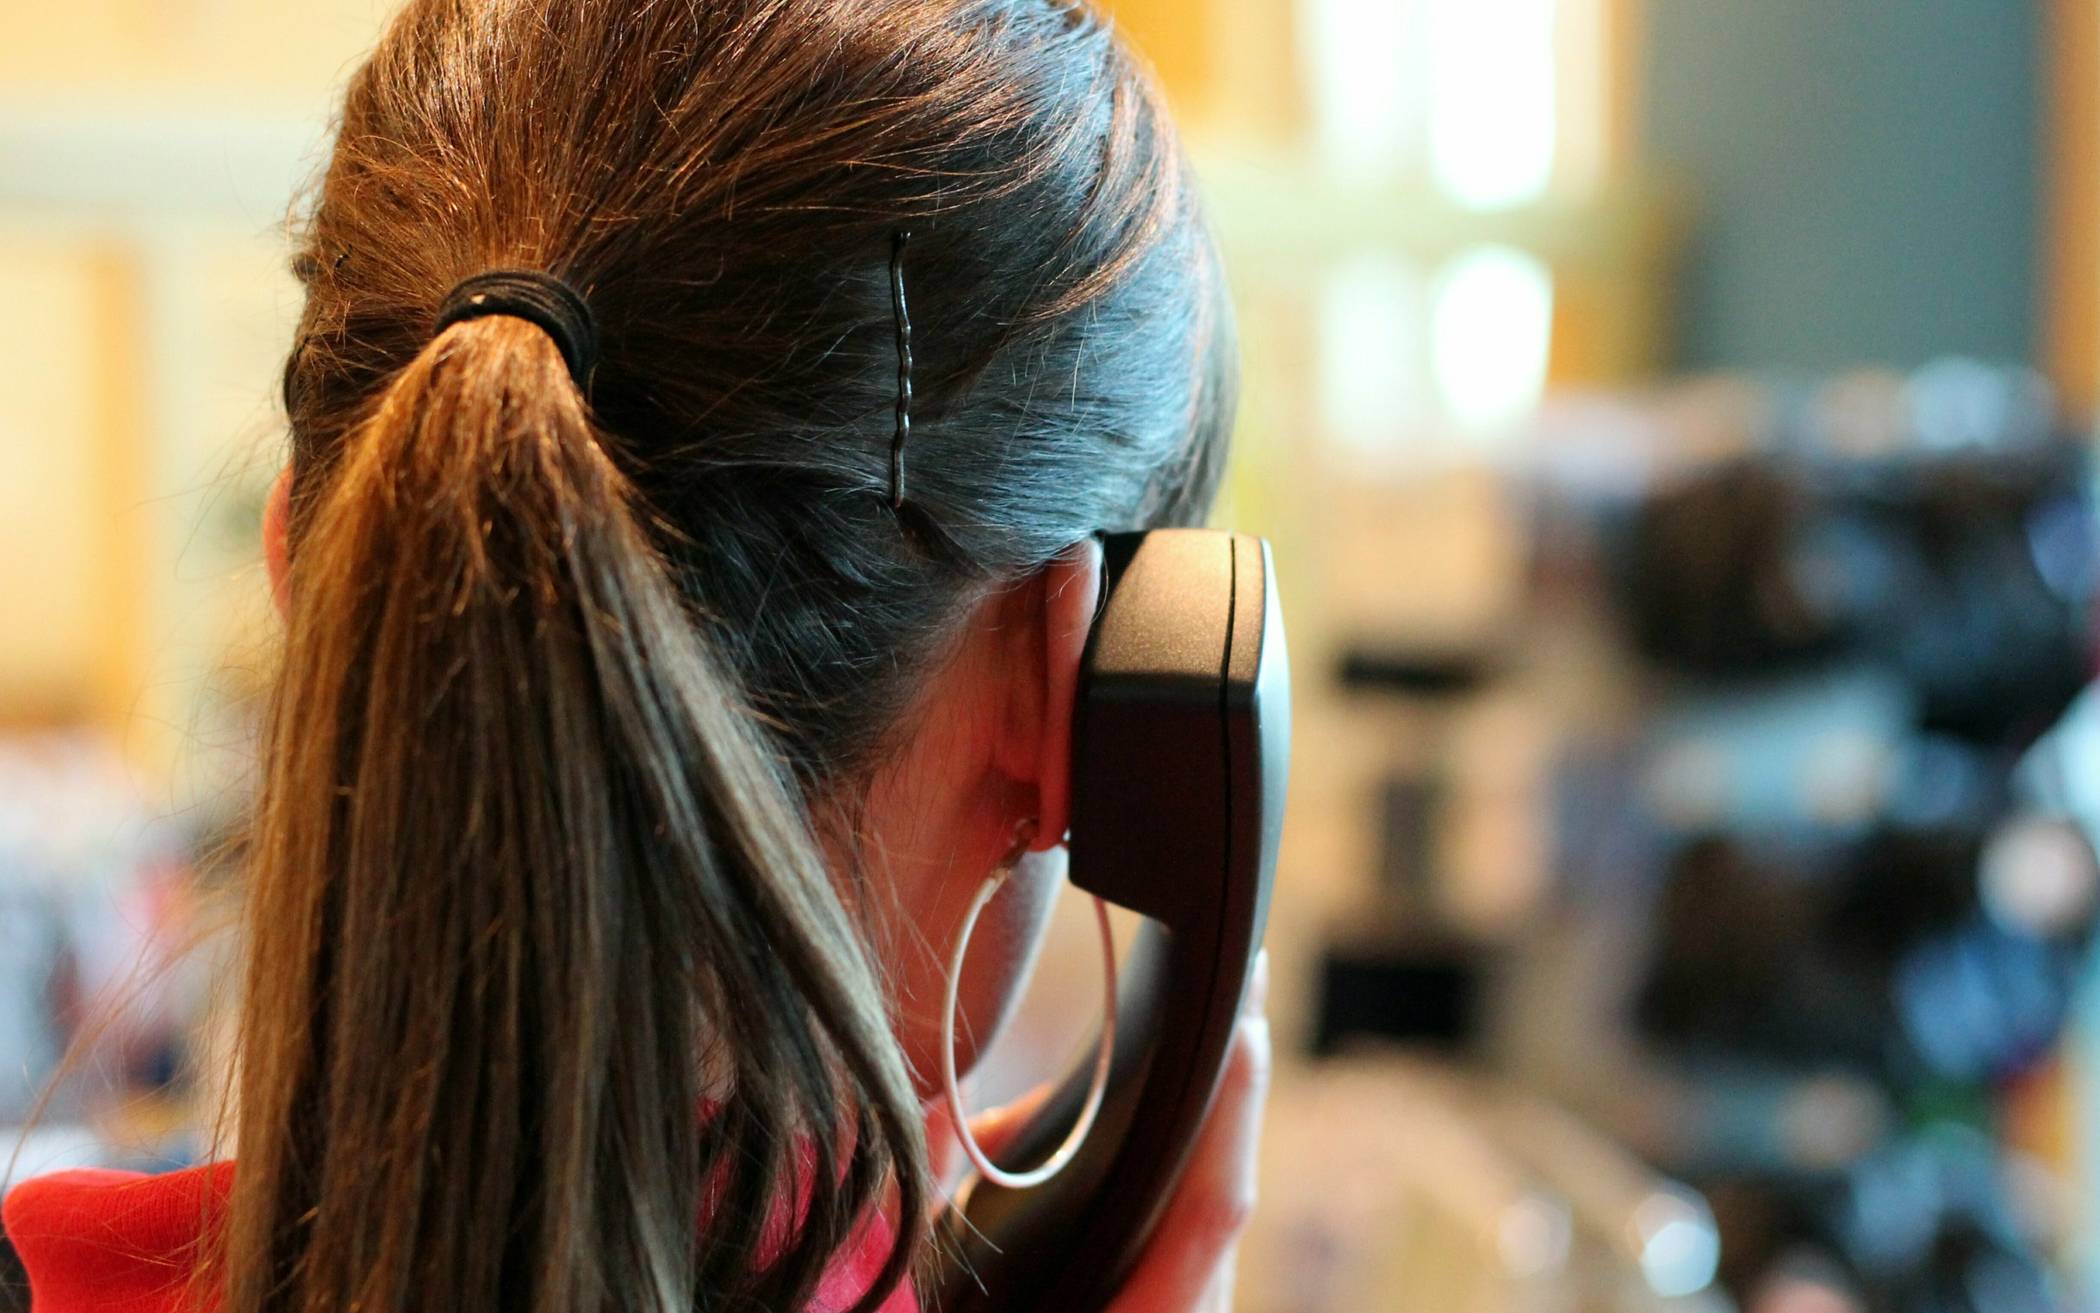  Das Hilfetelefon steht rund um die Uhr mit kompetenten Beraterinnen in 17 Sprachen zur Verfügung.  